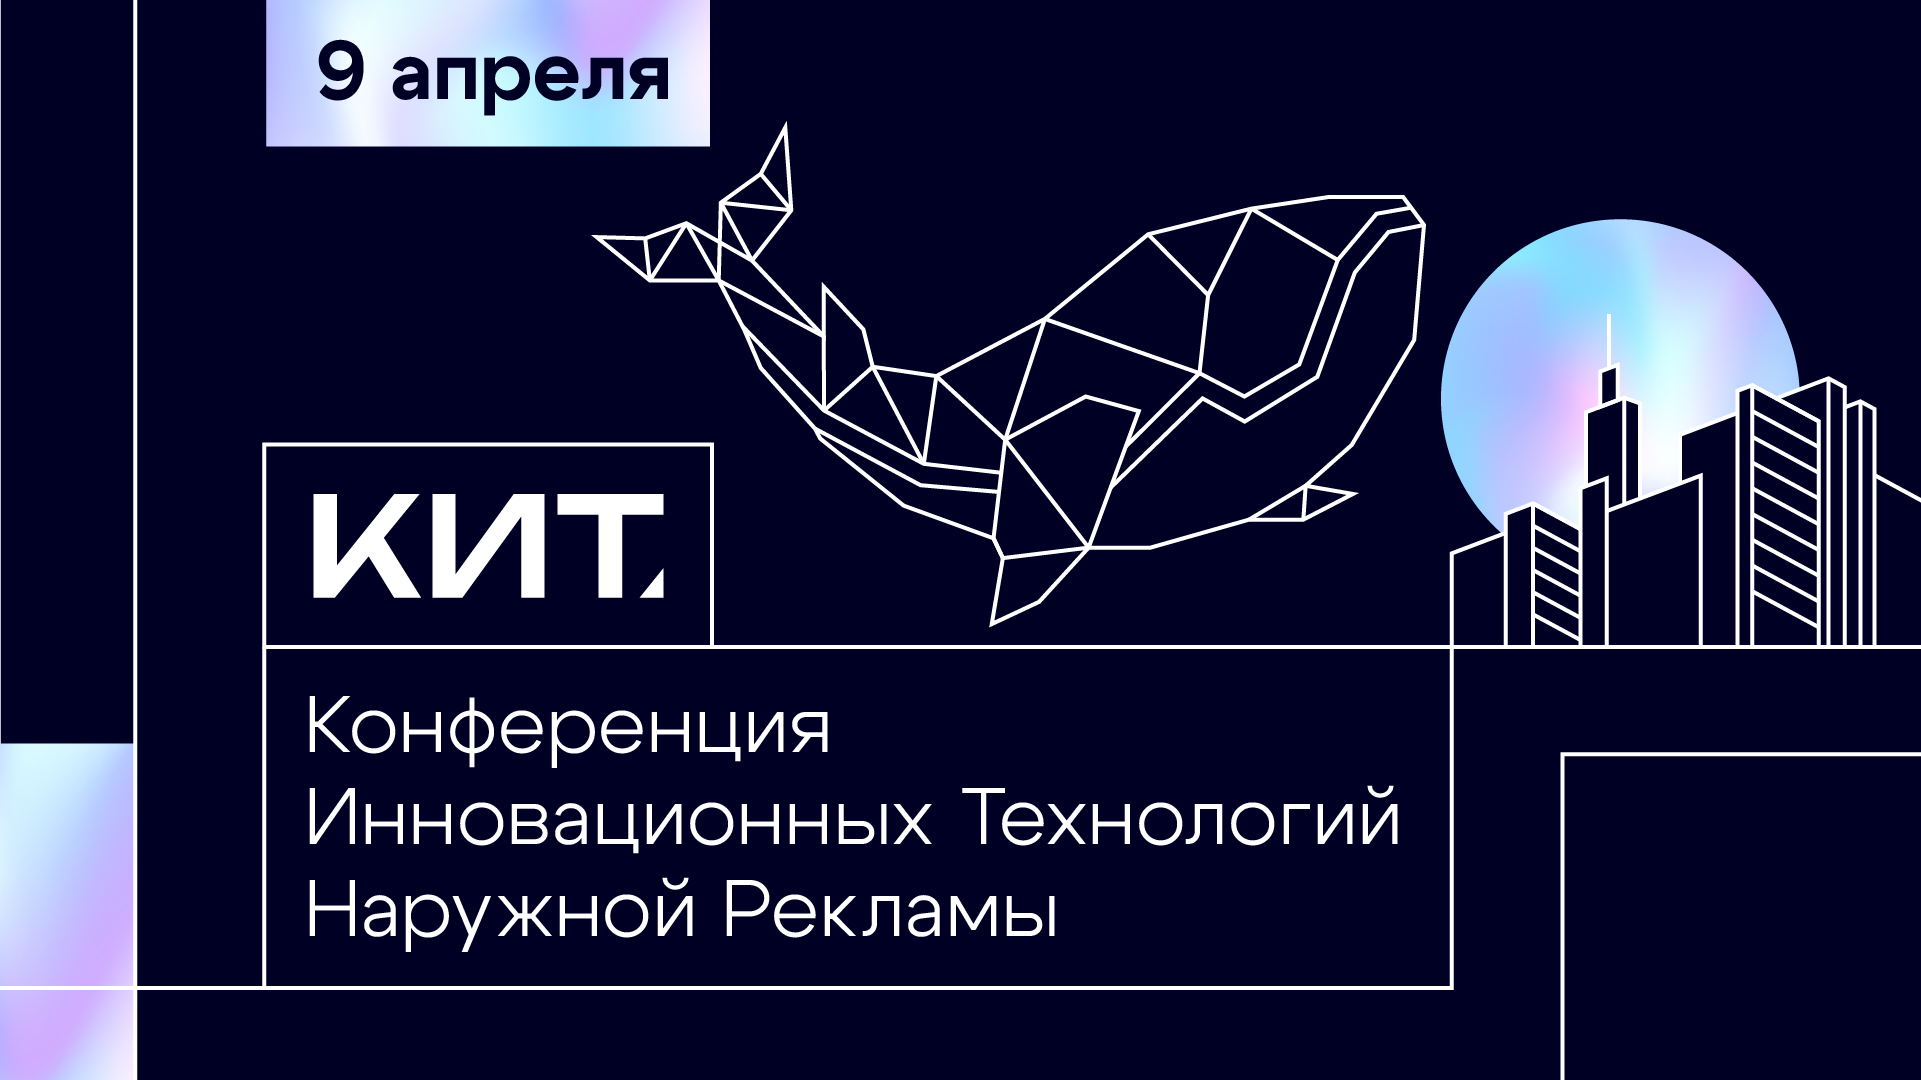 В Москве пройдет первая отраслевая Конференция Инновационных Технологий наружной рекламы